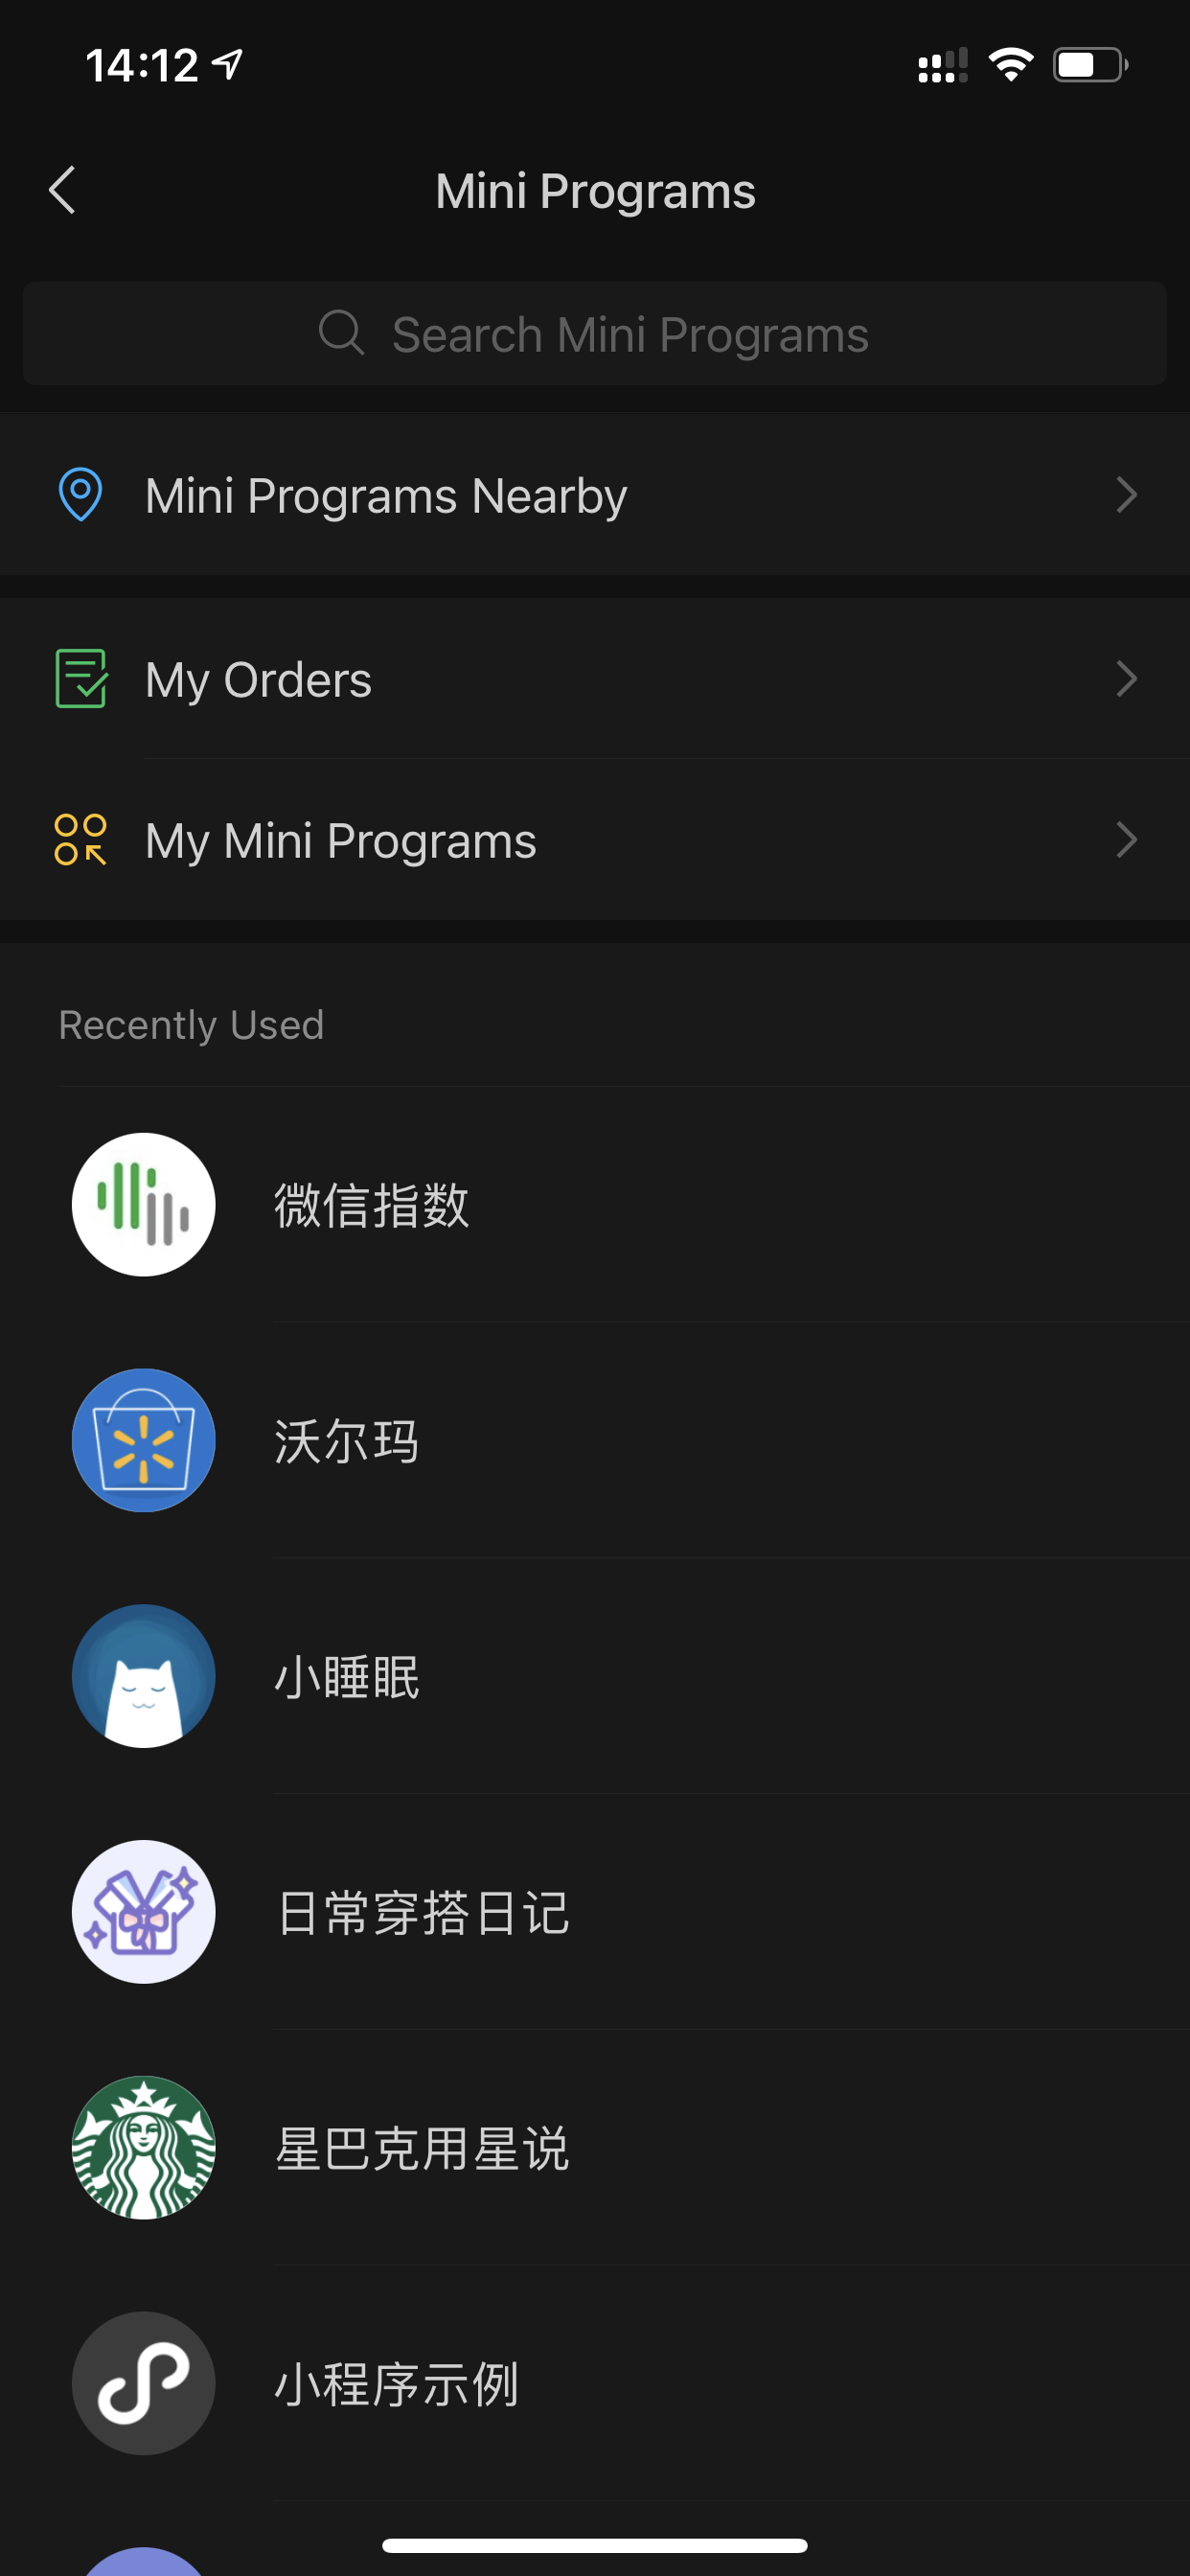 لیست برنامه های کوچک اخیراً در برنامه فوق العاده WeChat راه اندازی شده است.